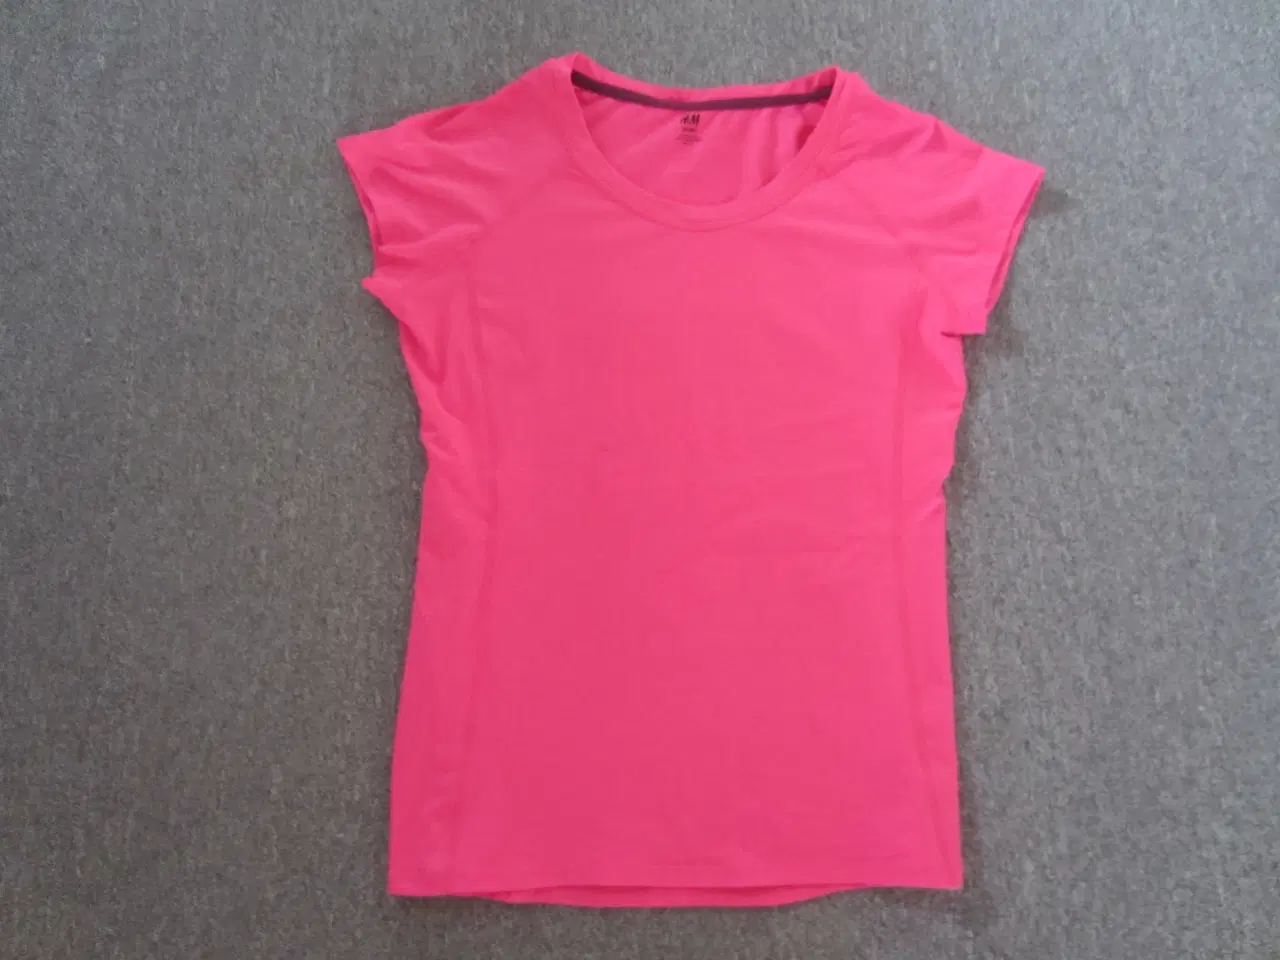 Billede 2 - Pink Fitnesstrøje - Sportstrøje i str. S fra H&M